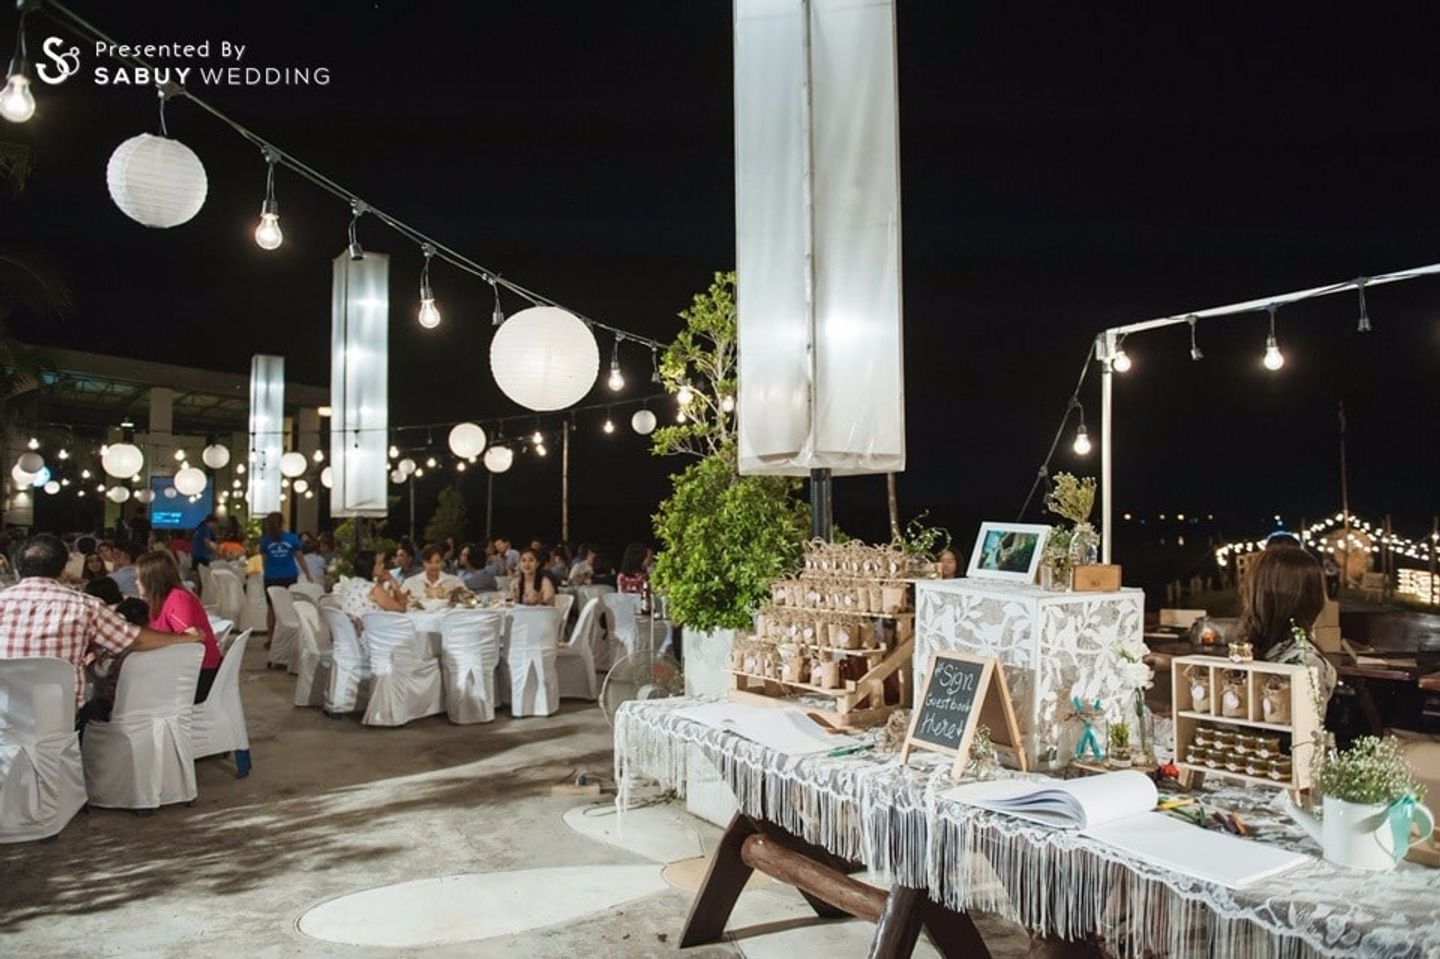 โต๊ะลงทะเบียนงานแต่ง,ตกแต่งงานแต่ง,งานแต่ง outdoor,โต๊ะจีน รีวิวงานแต่งบนเกาะกลางน้ำ สวย ชิค สบาย ได้อารมณ์เป็นส่วนตัว @บ้านระเบียงเคียงน้ำ